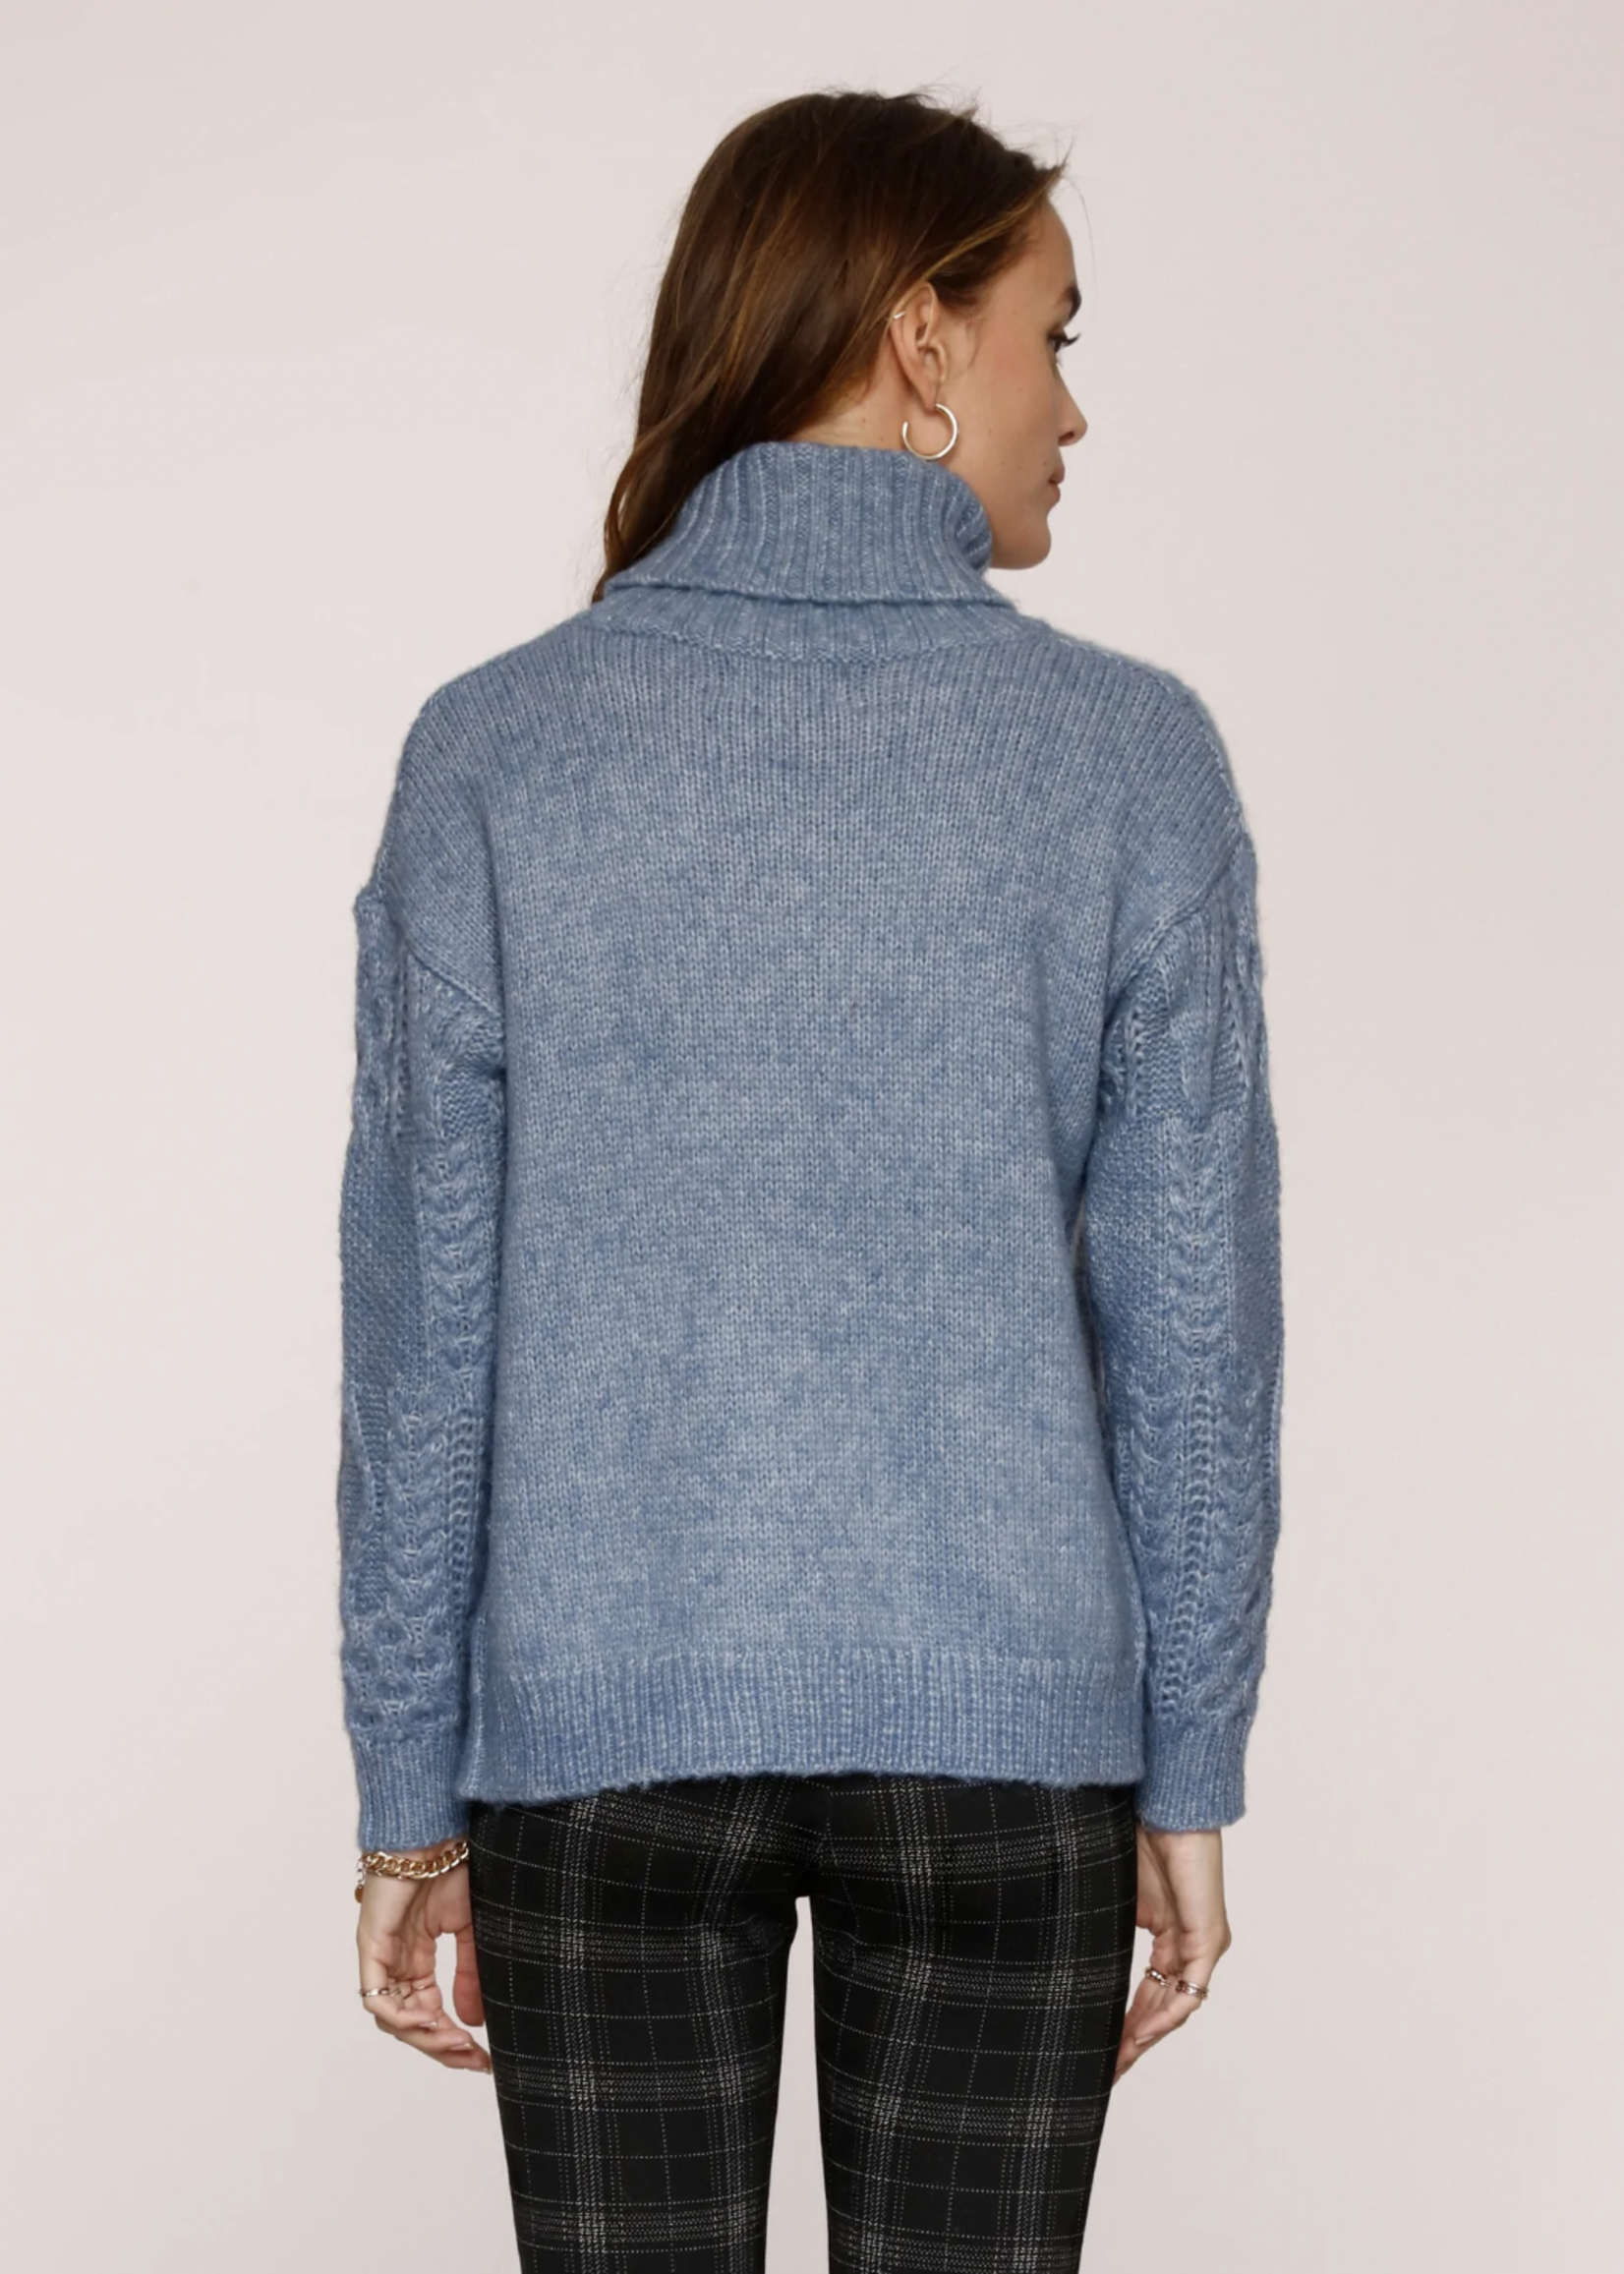 Elitaire Boutique Hudson Blue Sweater